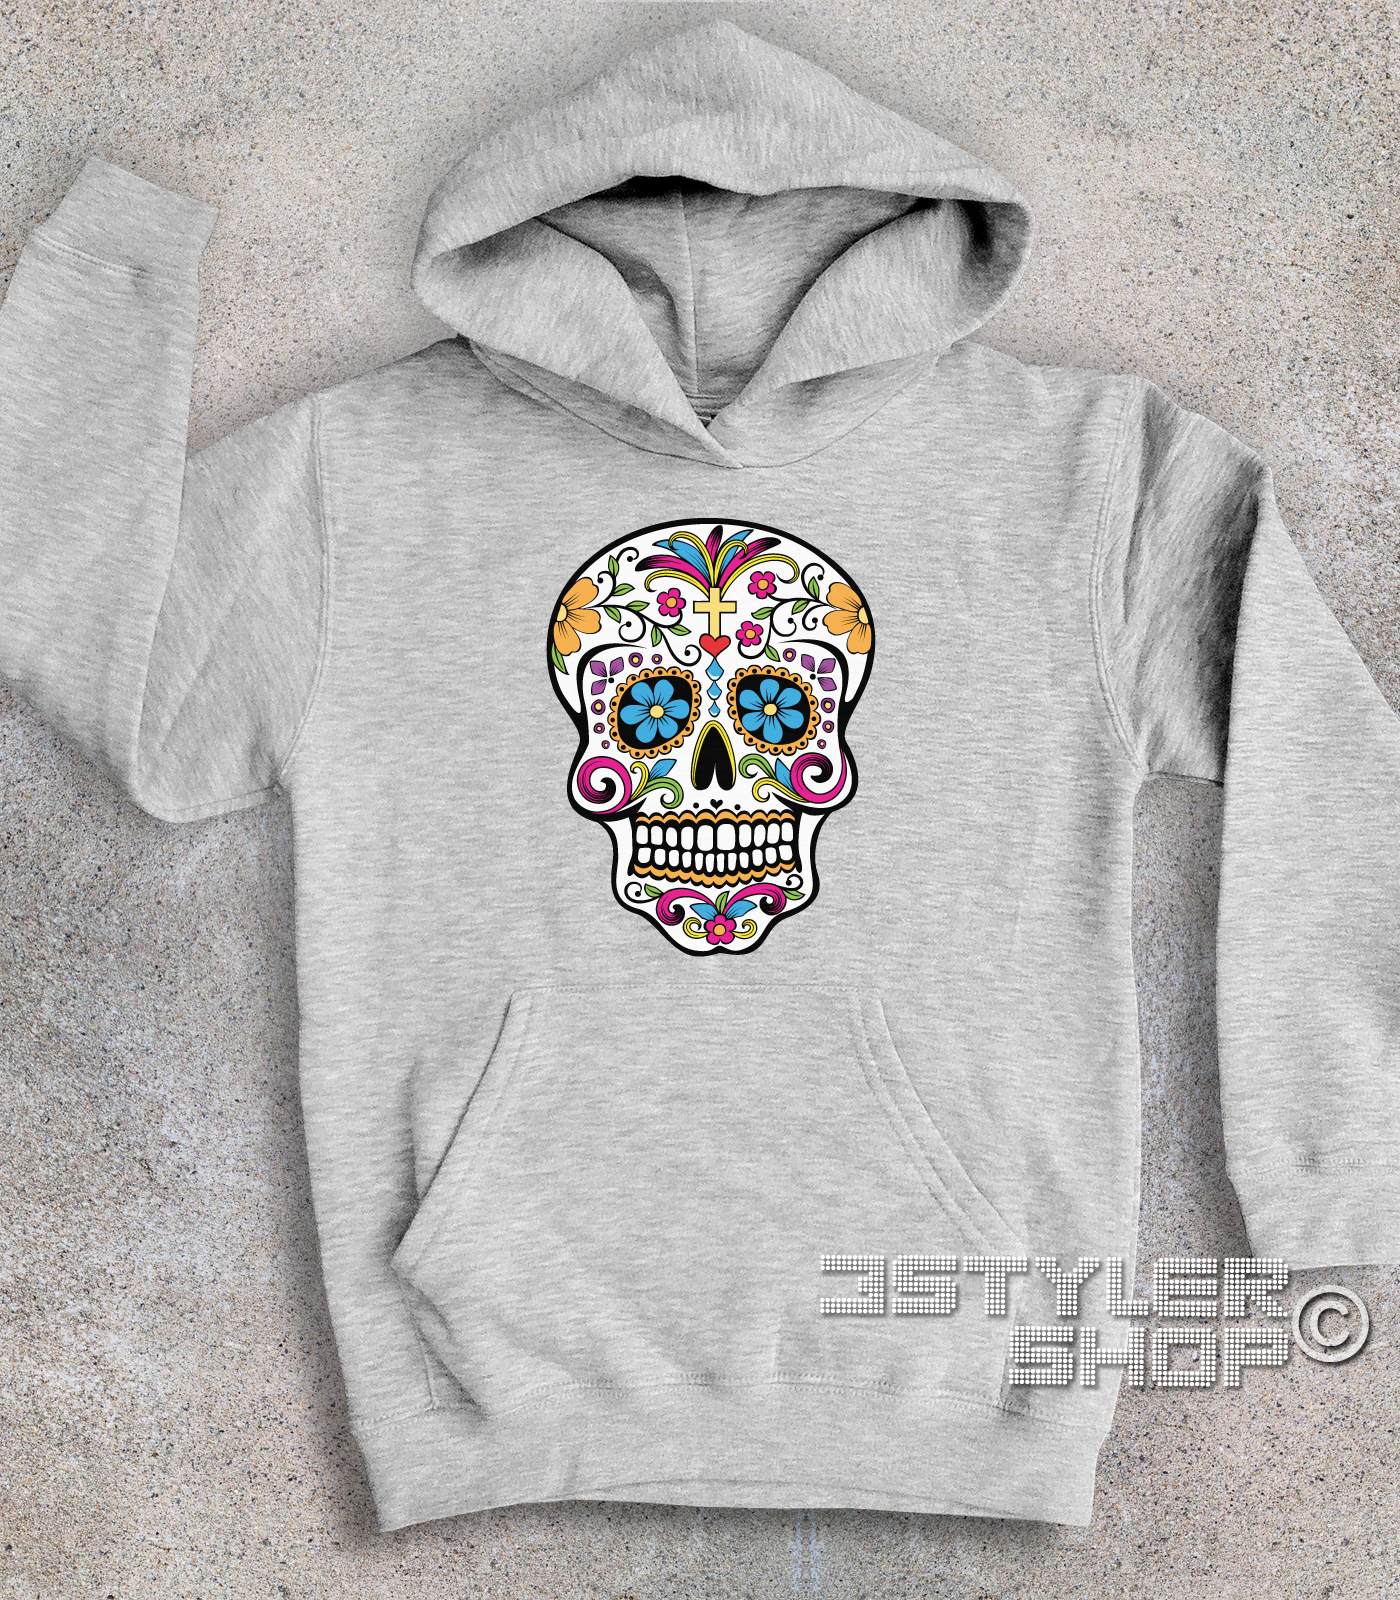 Teschio messicano felpa bambino - Mexican Skull - 3Stylershop